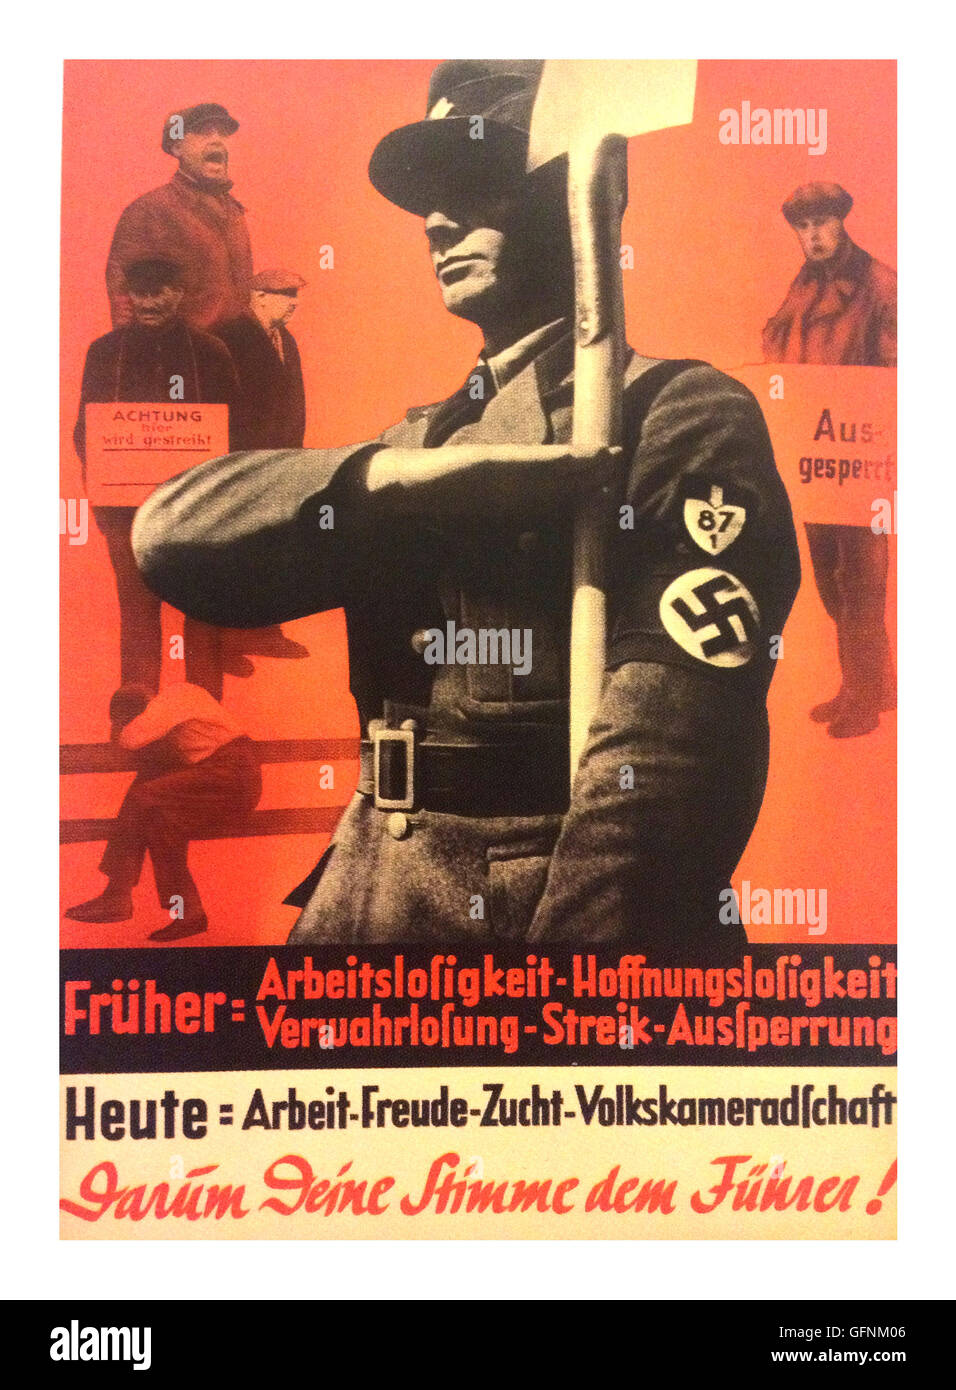 1937 NSDAP DI ADOLF HITLER poster di propaganda, dotate di un membro del partito nazista in uniforme di indossare un bracciale con la svastica, salutando come egli è in possesso di una pala con i disoccupati o colpisce i lavoratori in background. "Il 29 marzo votare per Adolf Hitler, che terminerà la disoccupazione e la guerra civile in Germania " Foto Stock